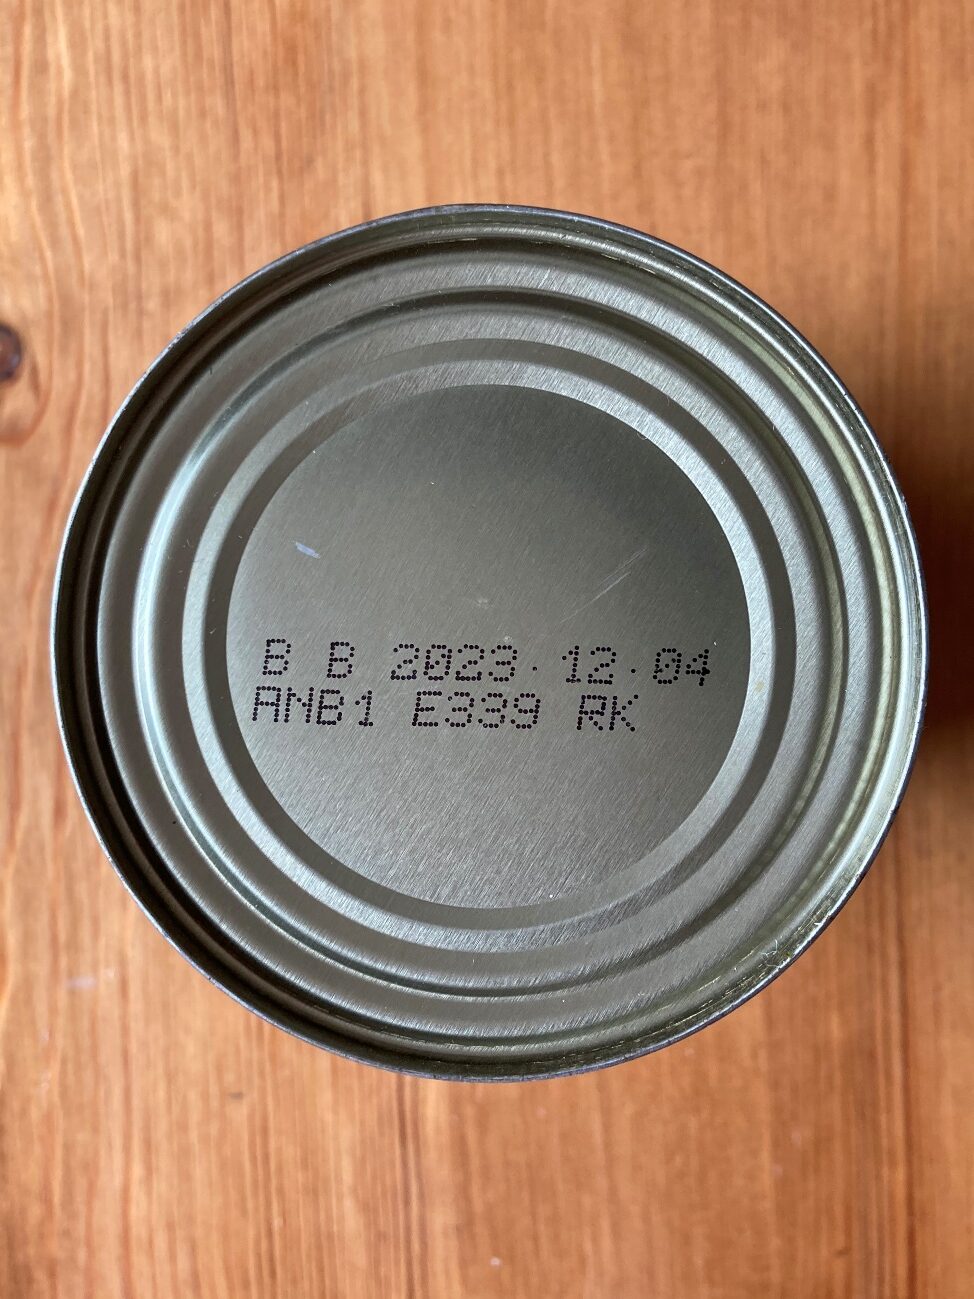 業務スーパーのレッドキドニービーンズ缶詰の賞味期限表記